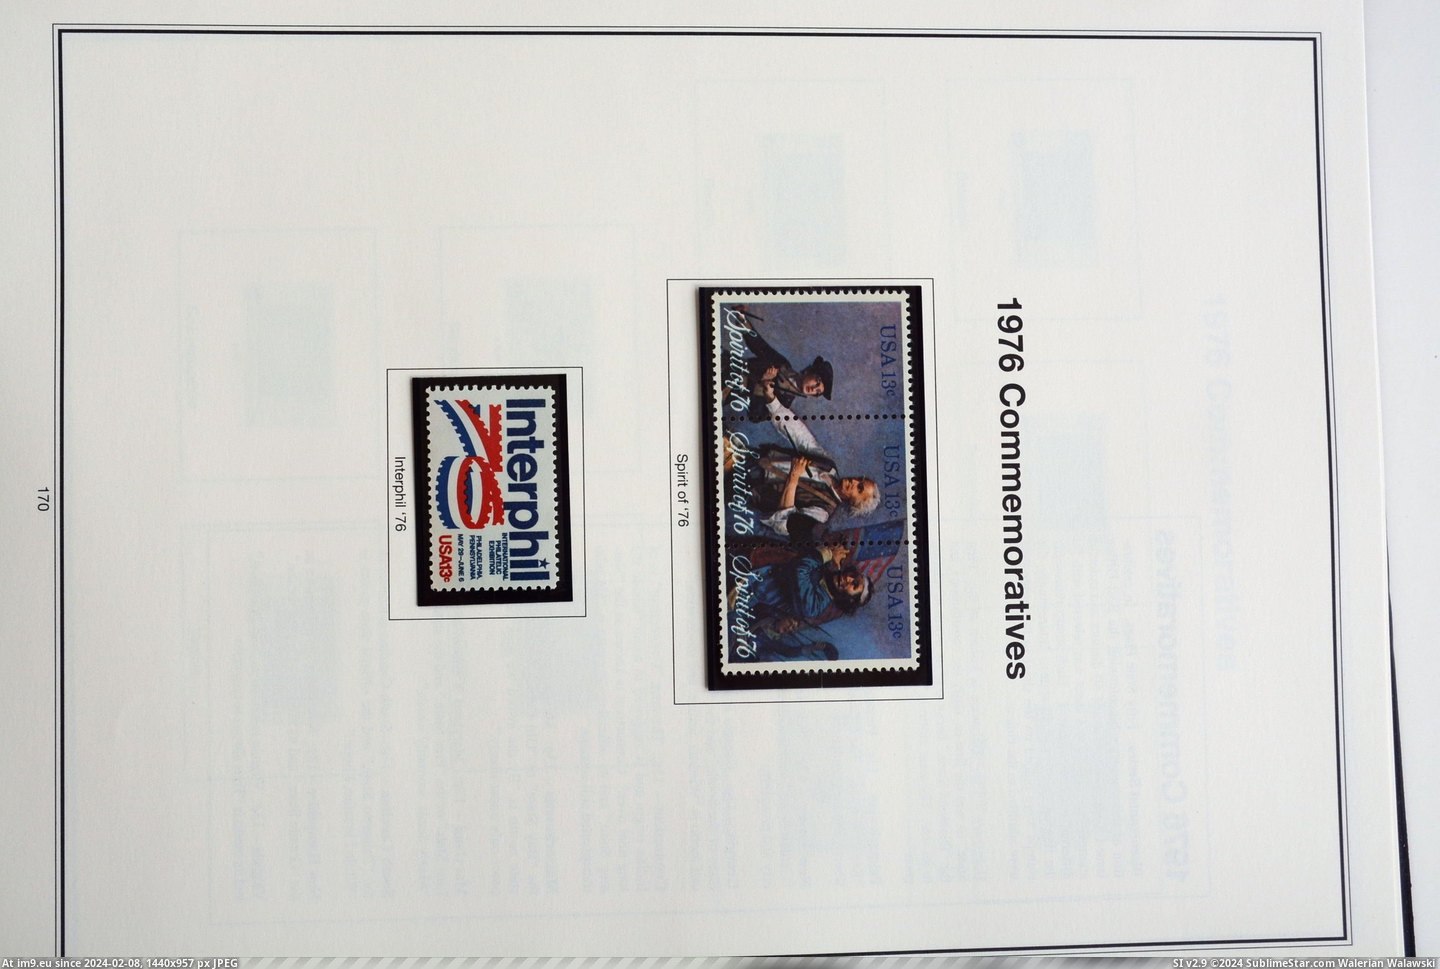  #Dsc  DSC_0880 Pic. (Obraz z album Stamp Covers))